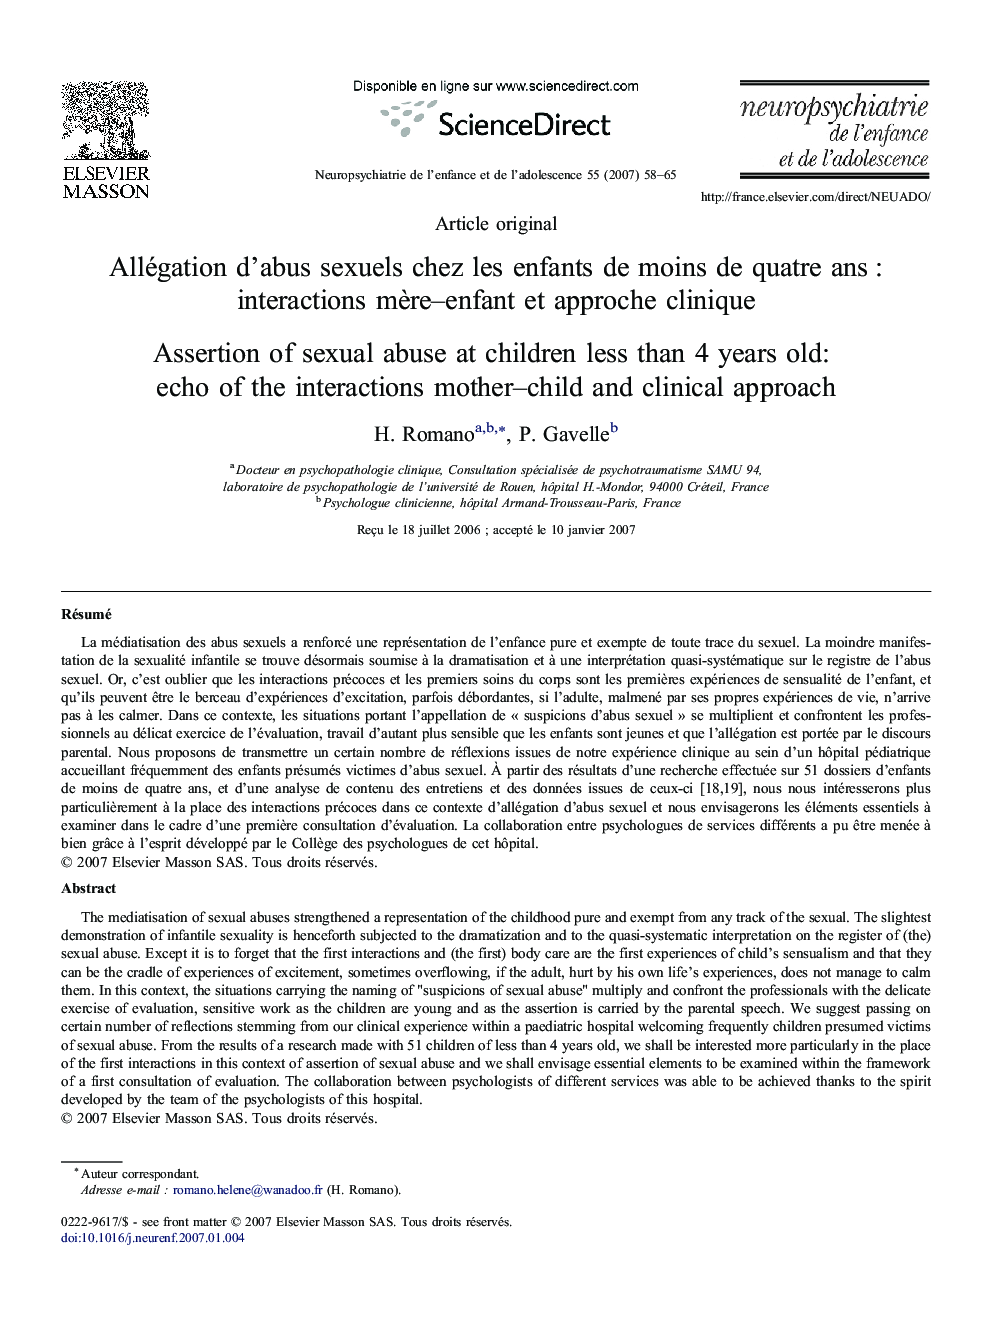 Allégation d'abus sexuels chez les enfants de moins de quatre ans : interactions mère–enfant et approche clinique